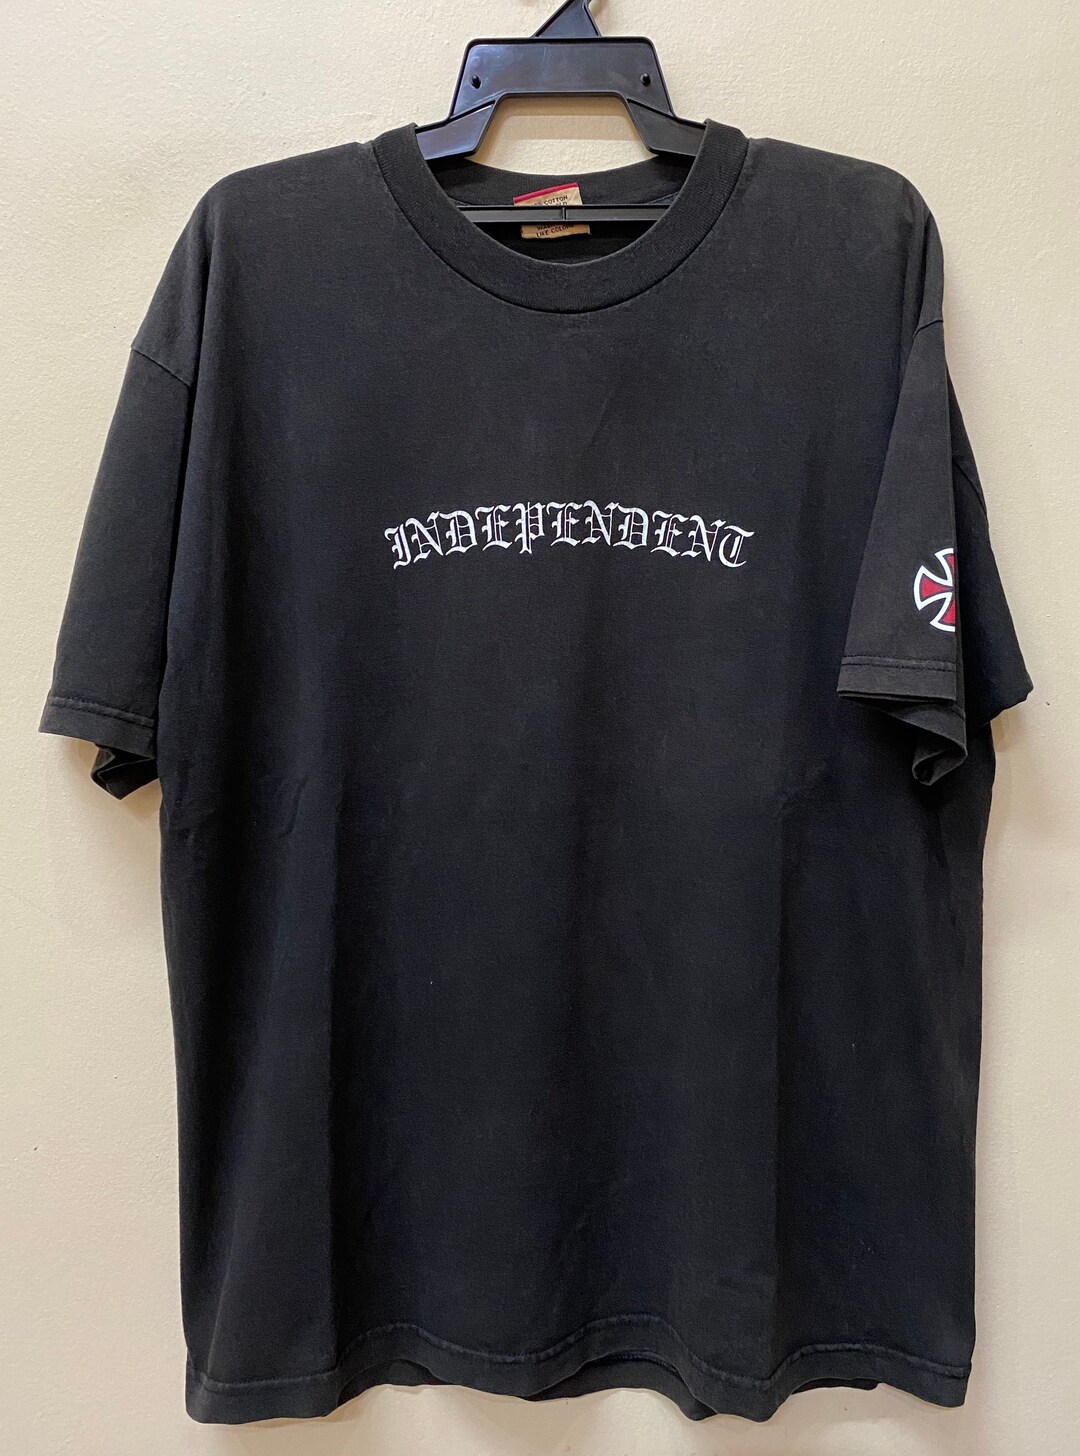 Vintage 90s Independent Skateboard T Shirt - Etsy